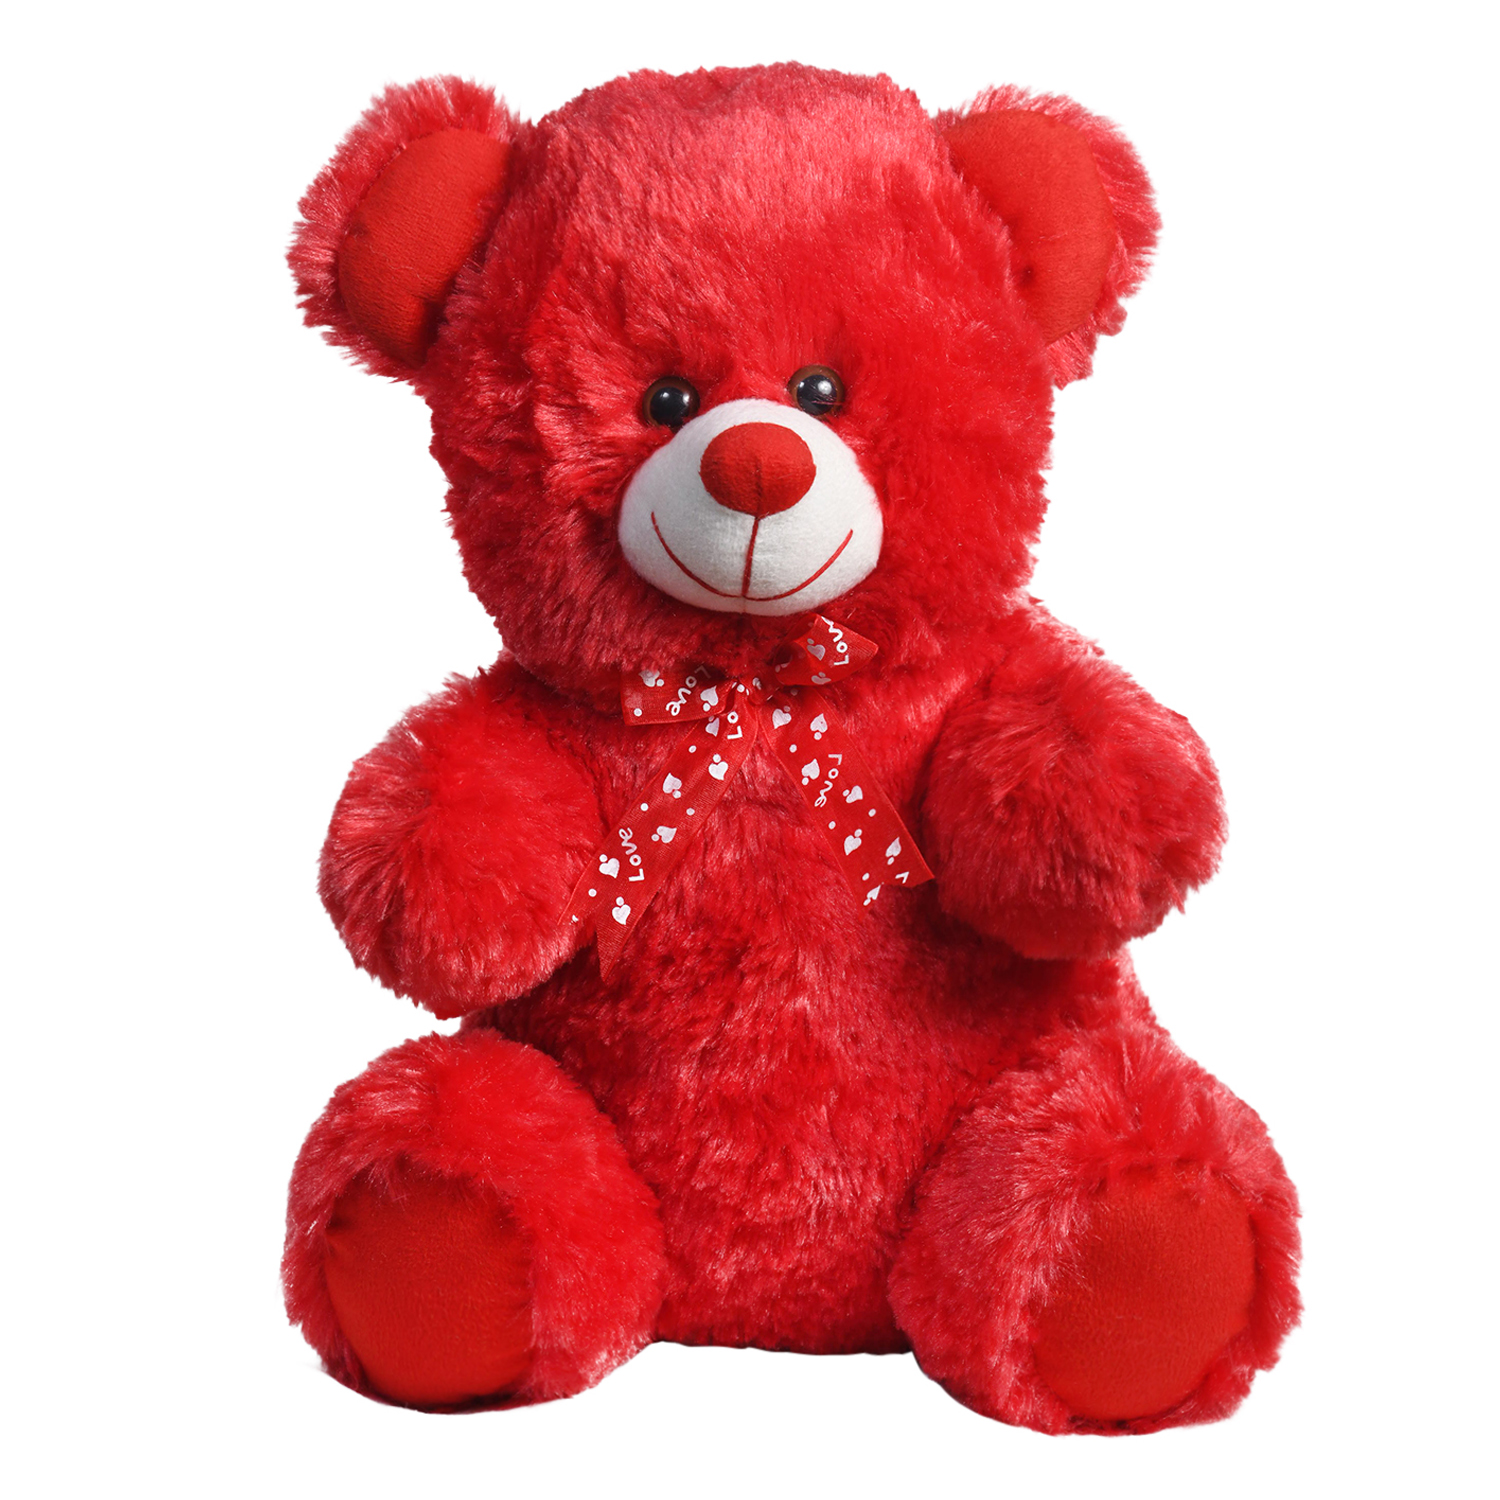 Ultra Cuddly Sitting Red Stuffed Teddy Bear Soft Toy Valentine Gift 15 Inch